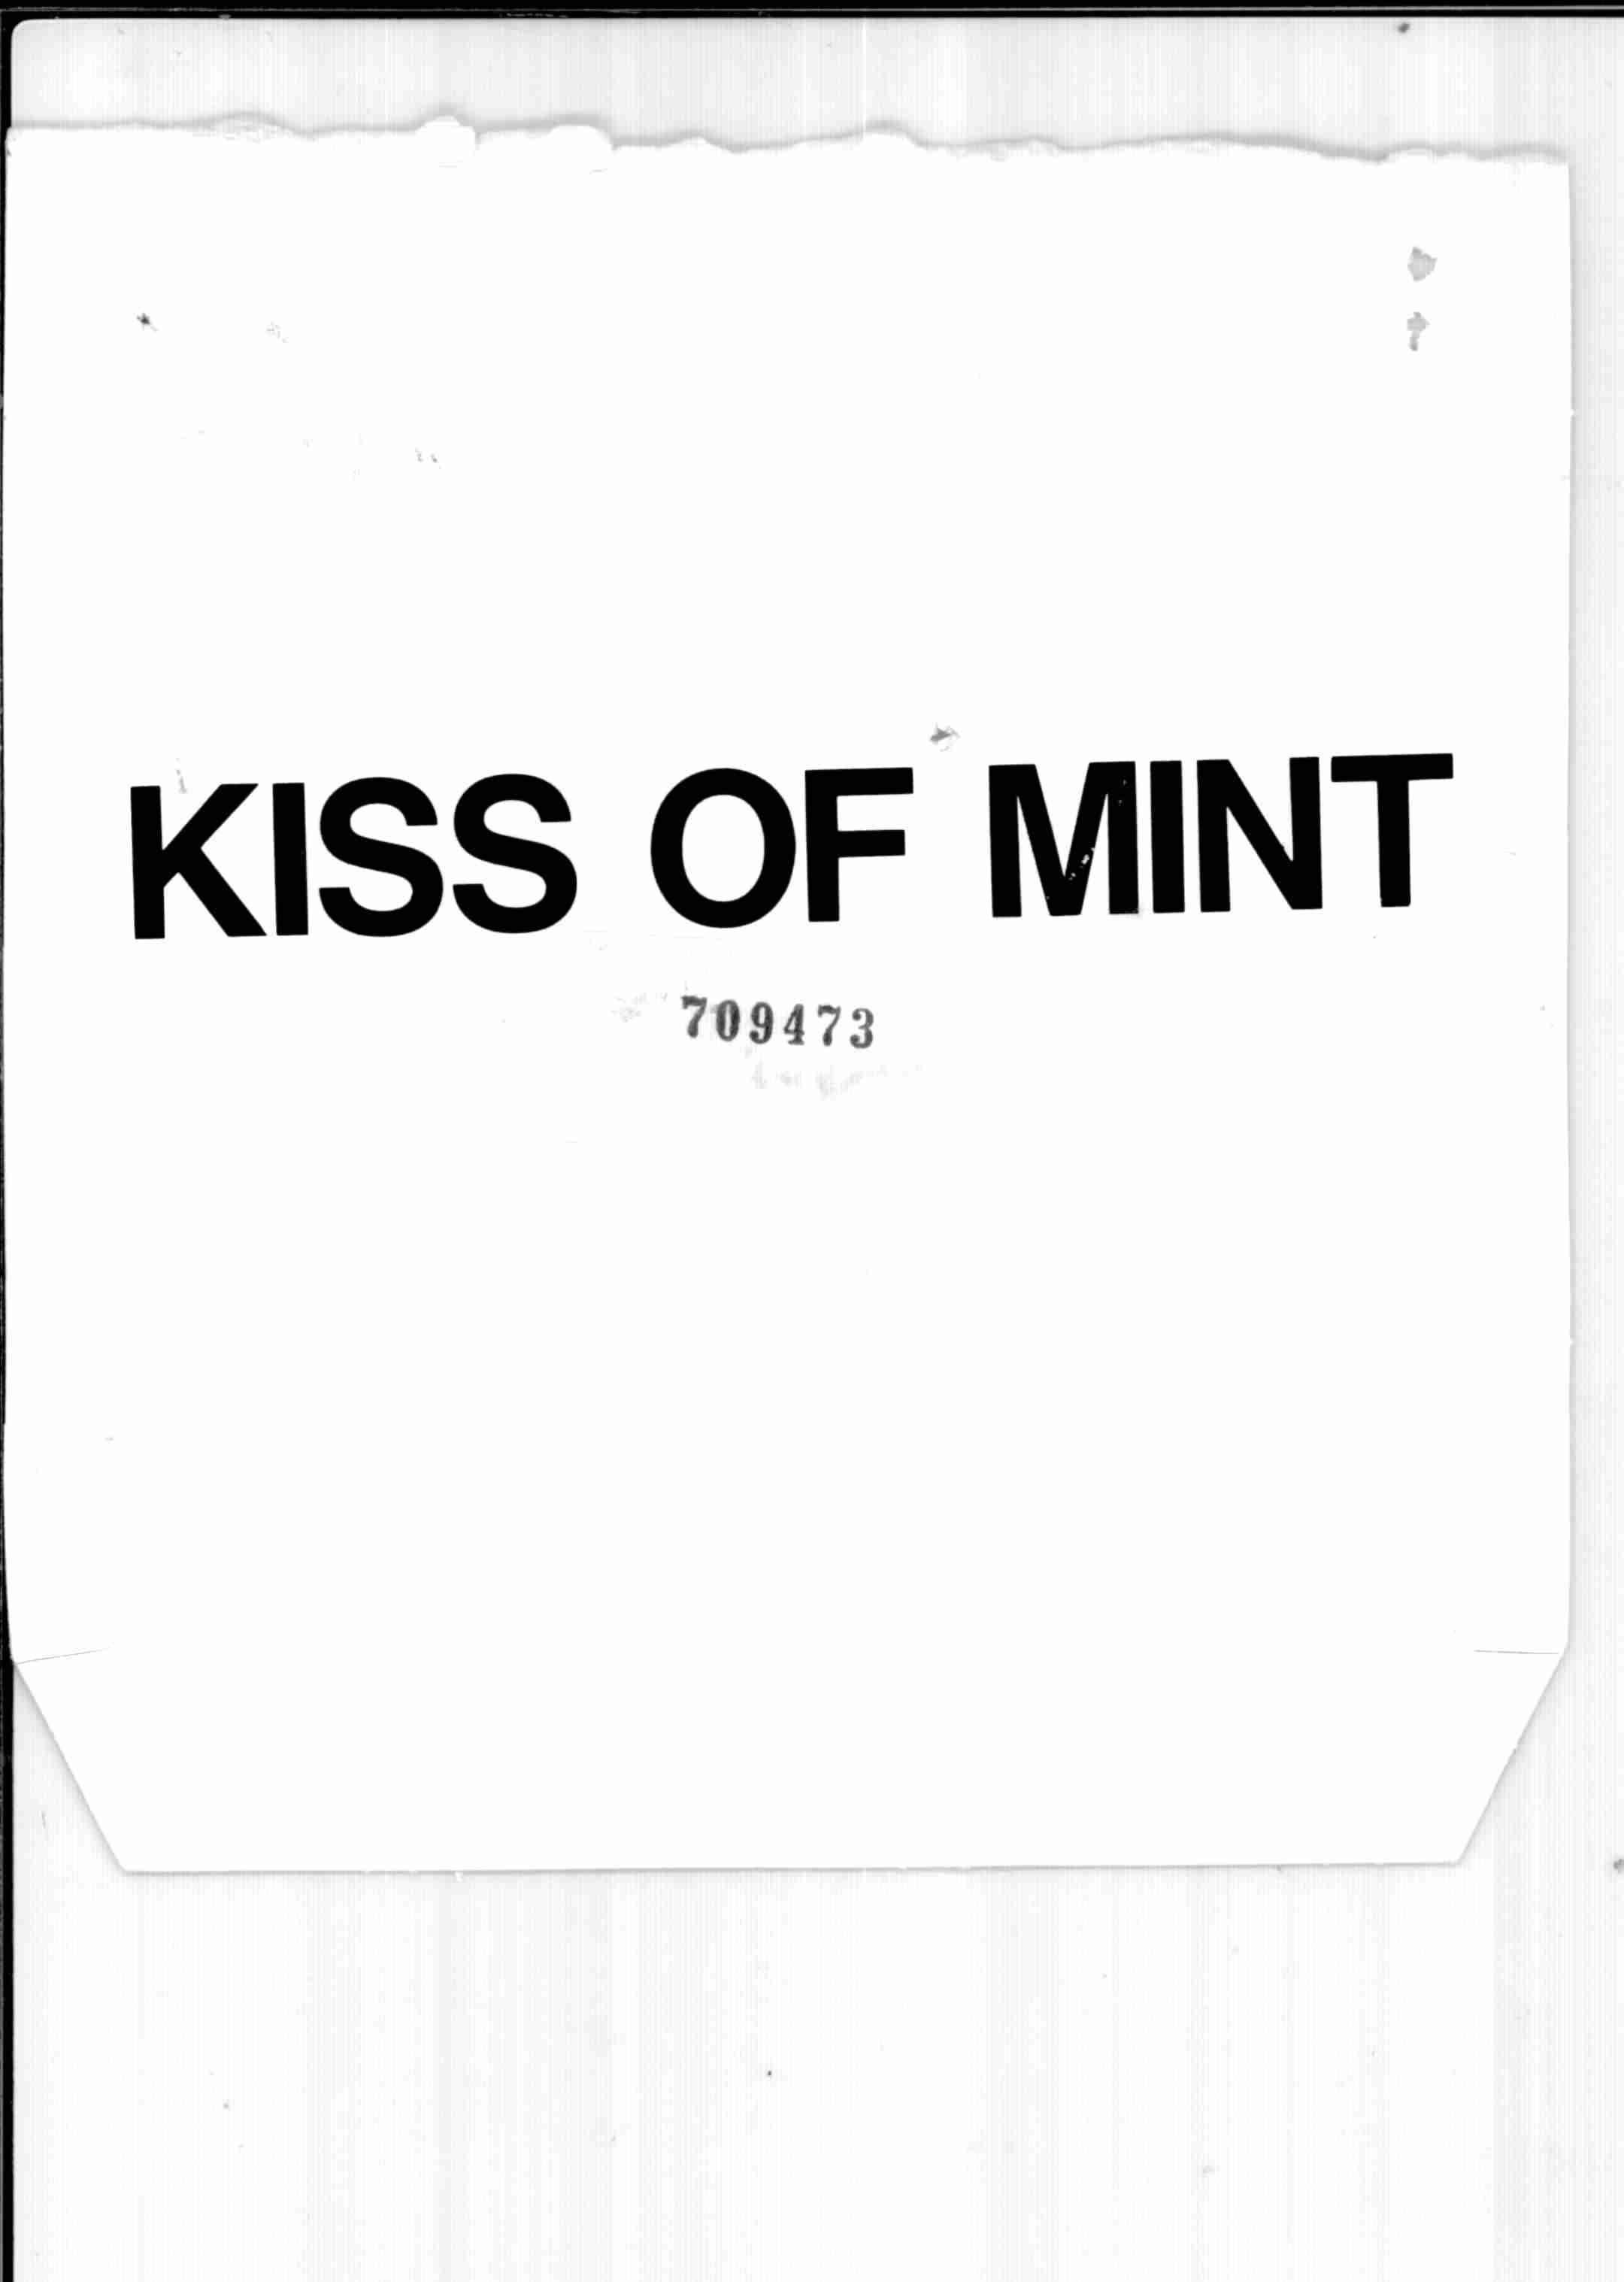  KISS OF MINT